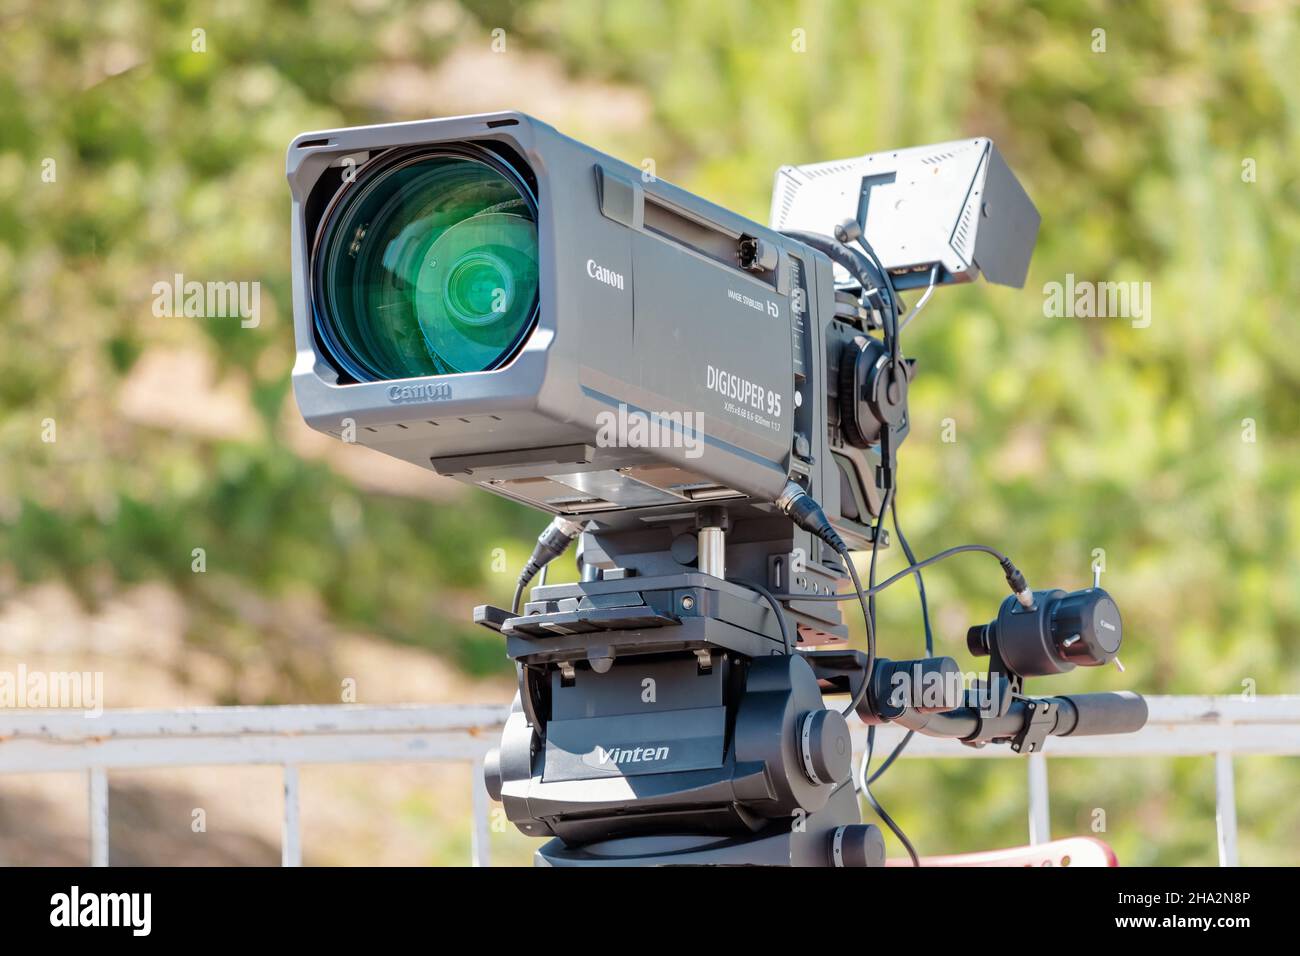 06. Juli 2021, Ufa, Russland: Professionelle digitale Canon Videokamera. Ausstattung für TV und Internet-Übertragung. Konzept für Nachrichtenmedien und Technologien Stockfoto